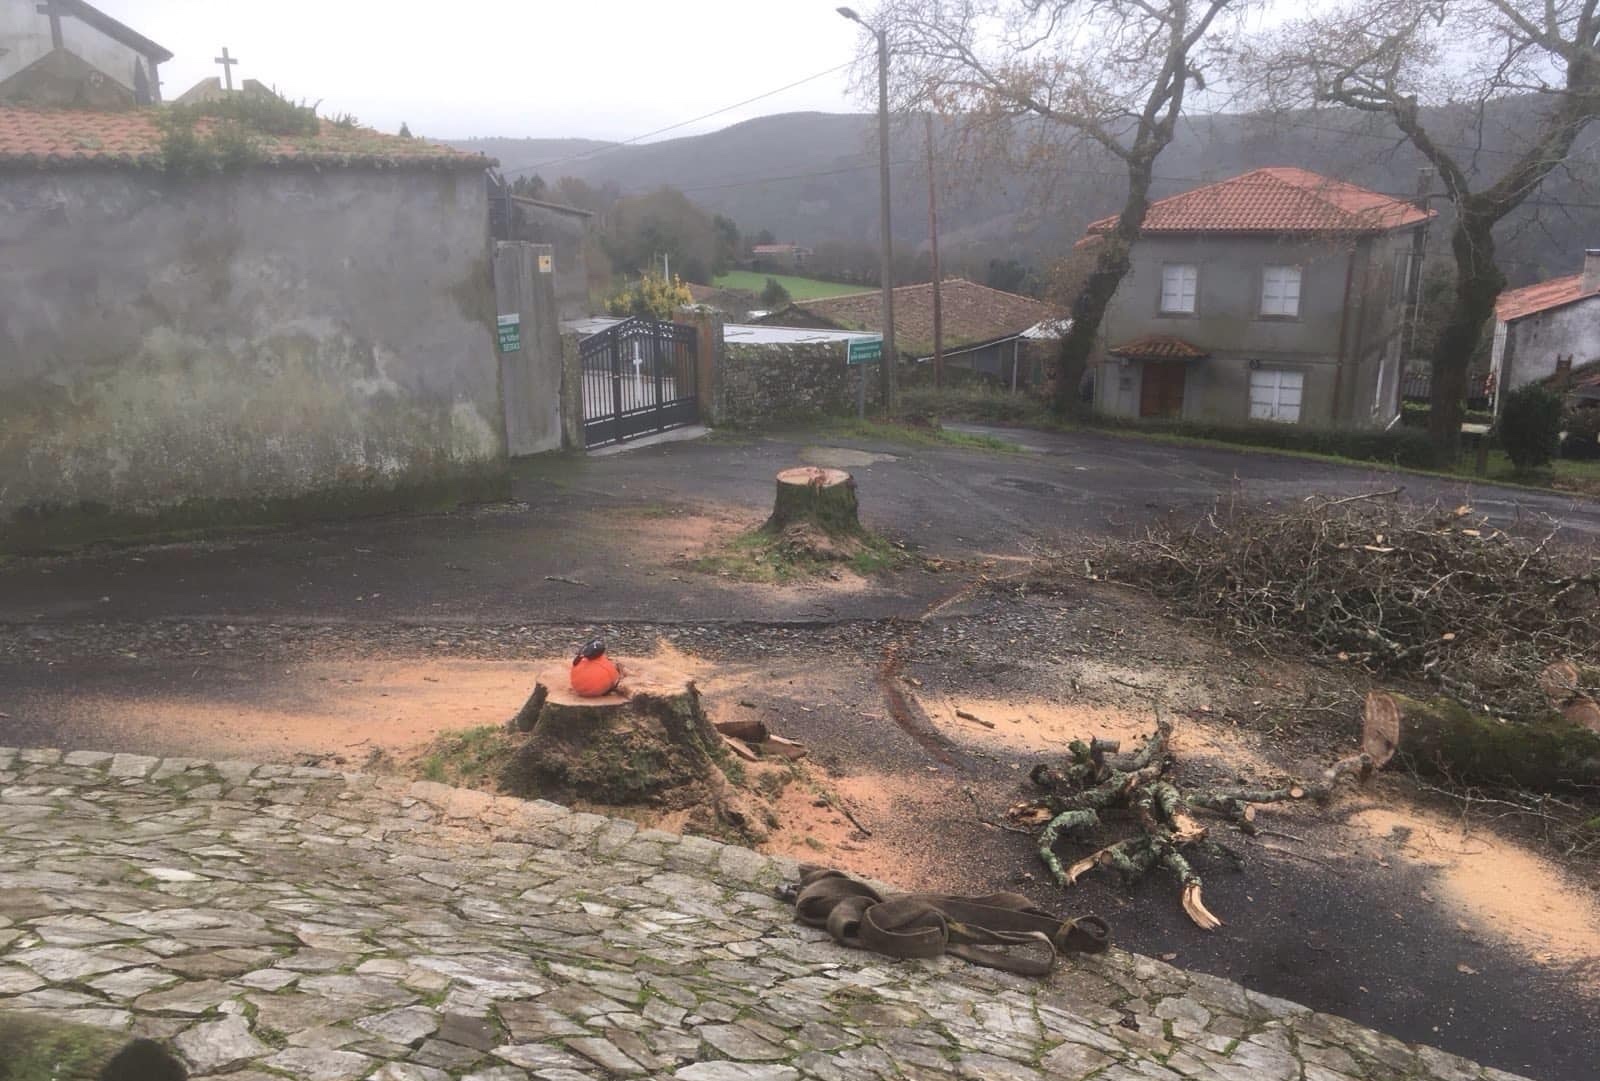 [BREVES] Tala de robles centenarios en el acceso al cementerio // Dos personas atrapadas en el camposanto de Lugo